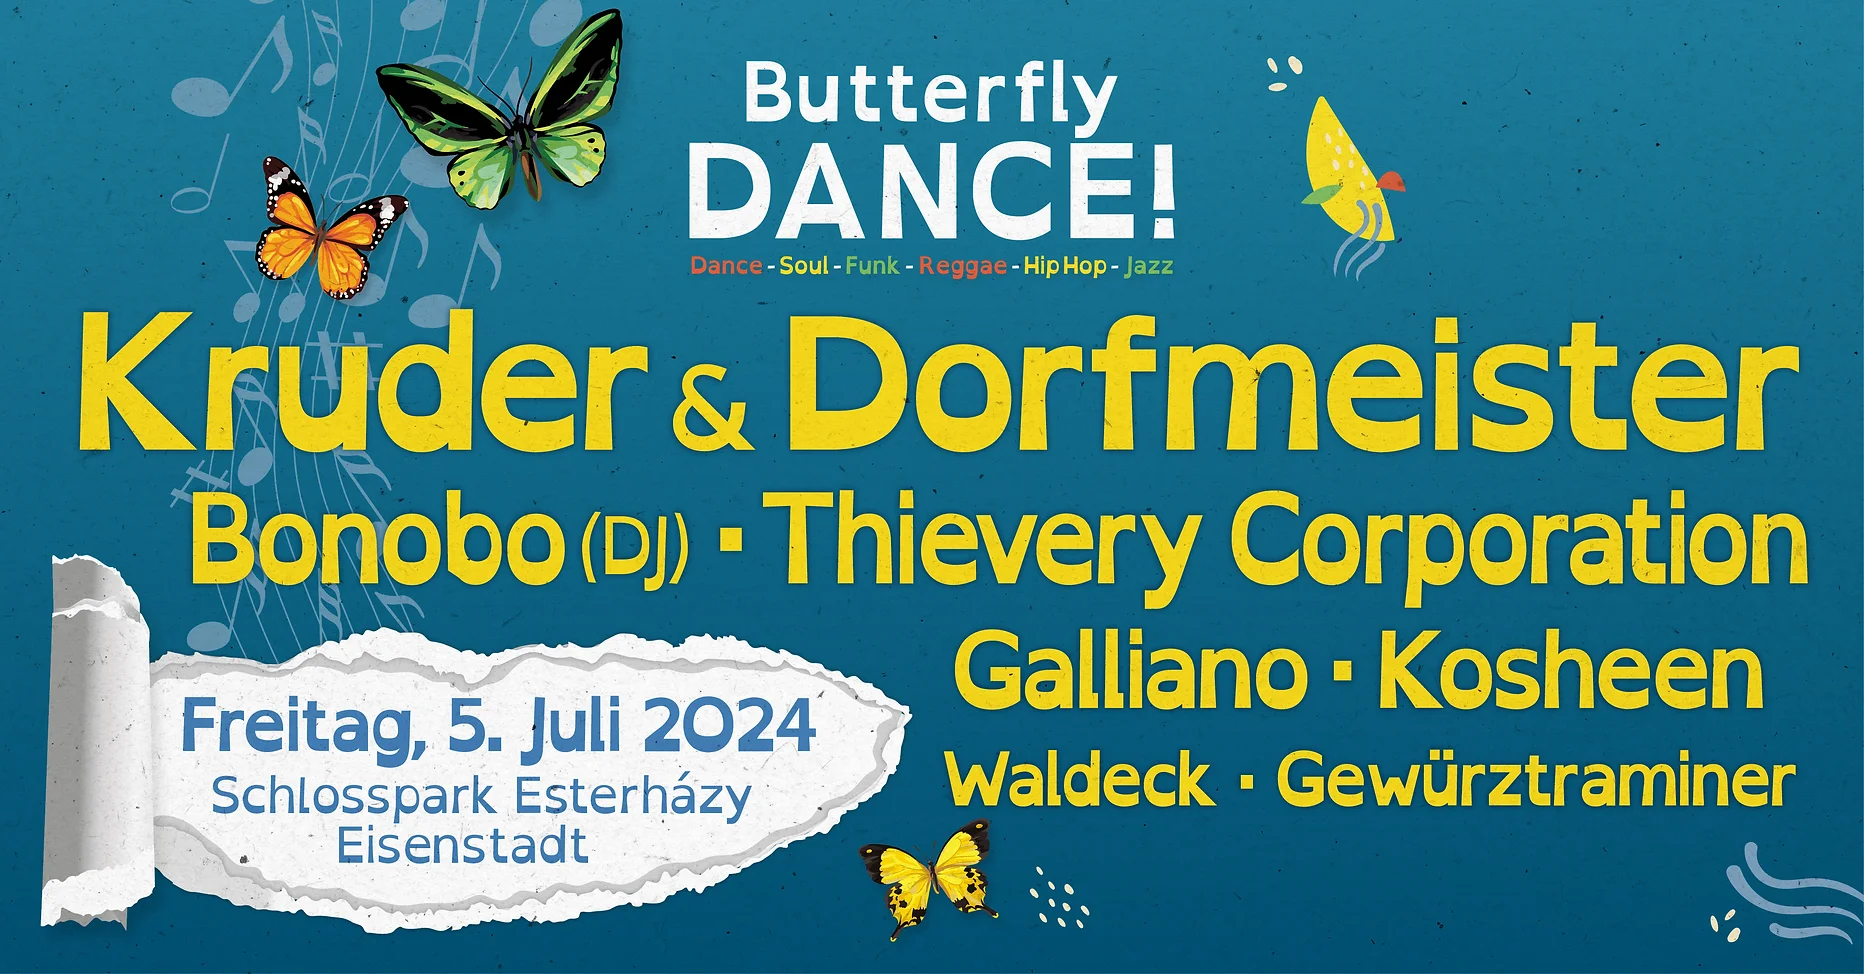 Butterfly Dance! 2024 am 5. July 2024 @ Schlosspark Esterházy.